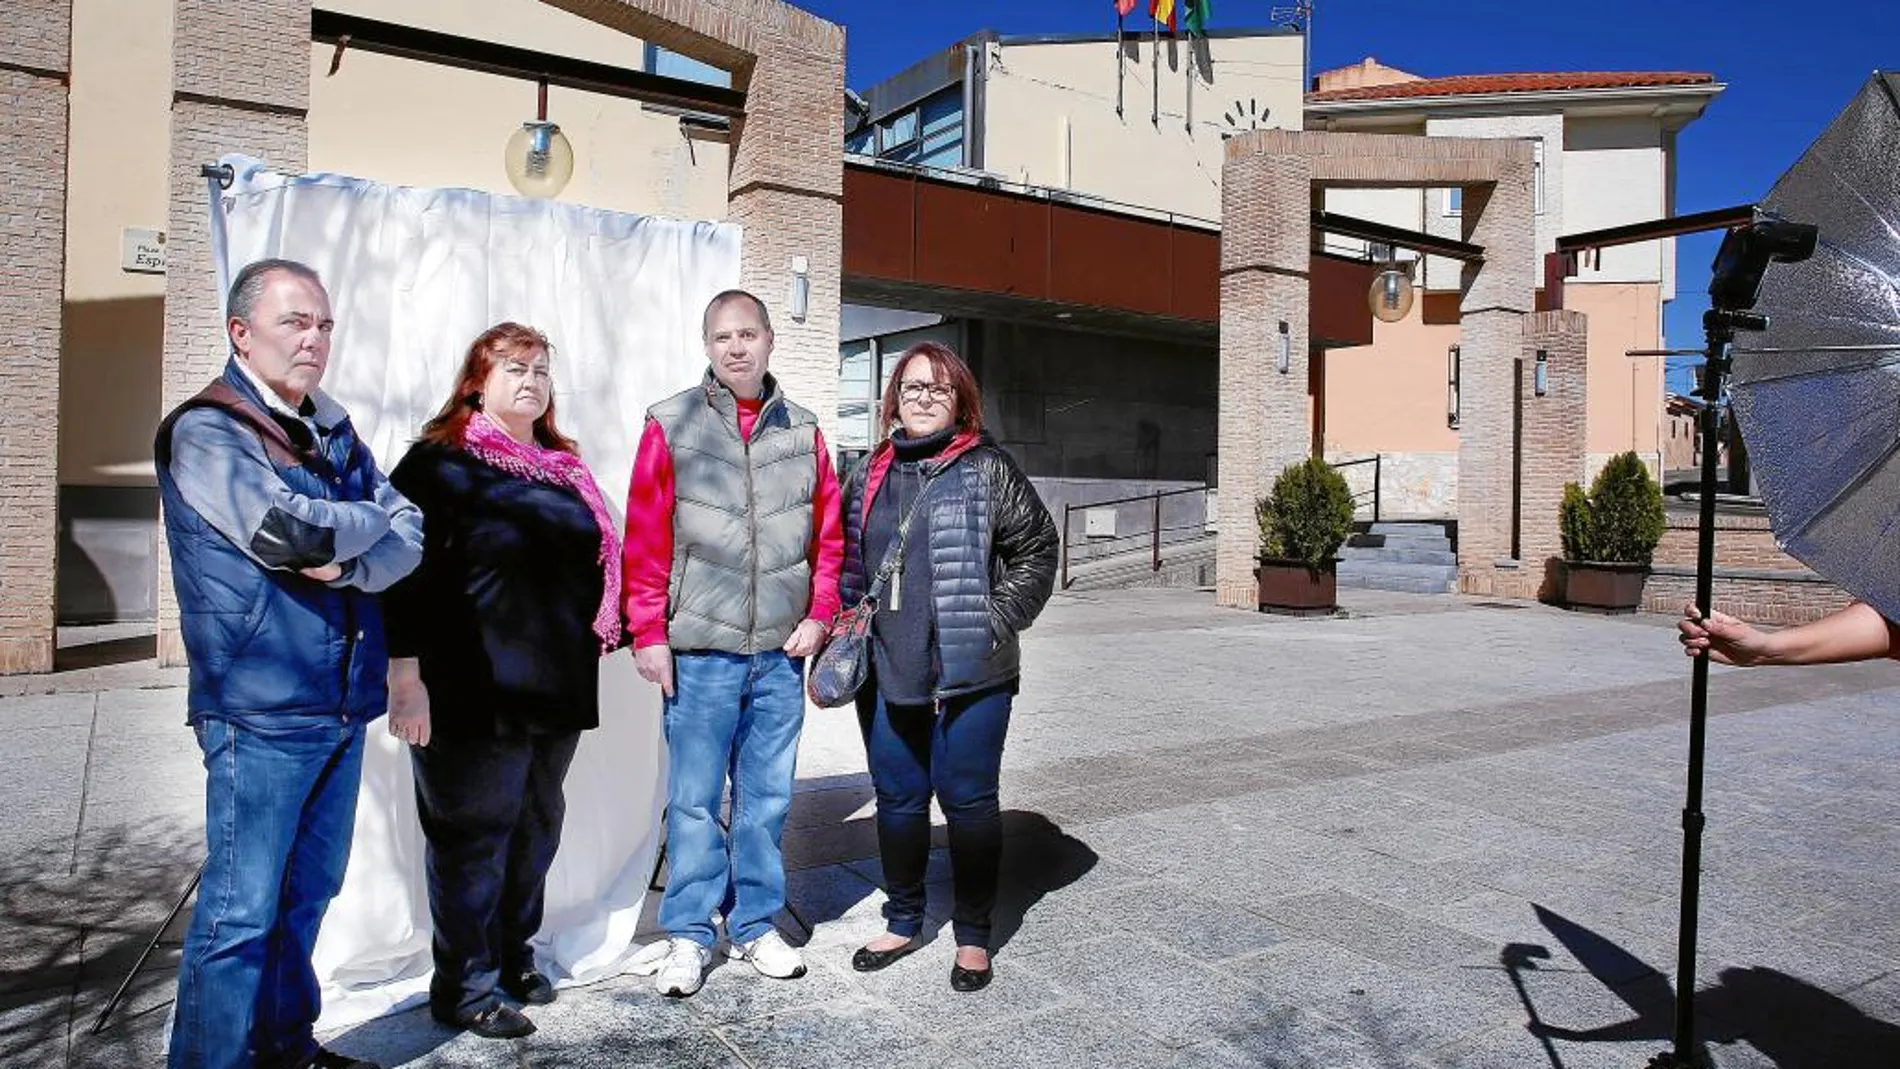 Ángel, Rosa, Tomás y Mari Mar, frente al Ayuntamiento del que han sido despedidos por el bipartito de independientes y Cambiemos, la marca local de Podemos